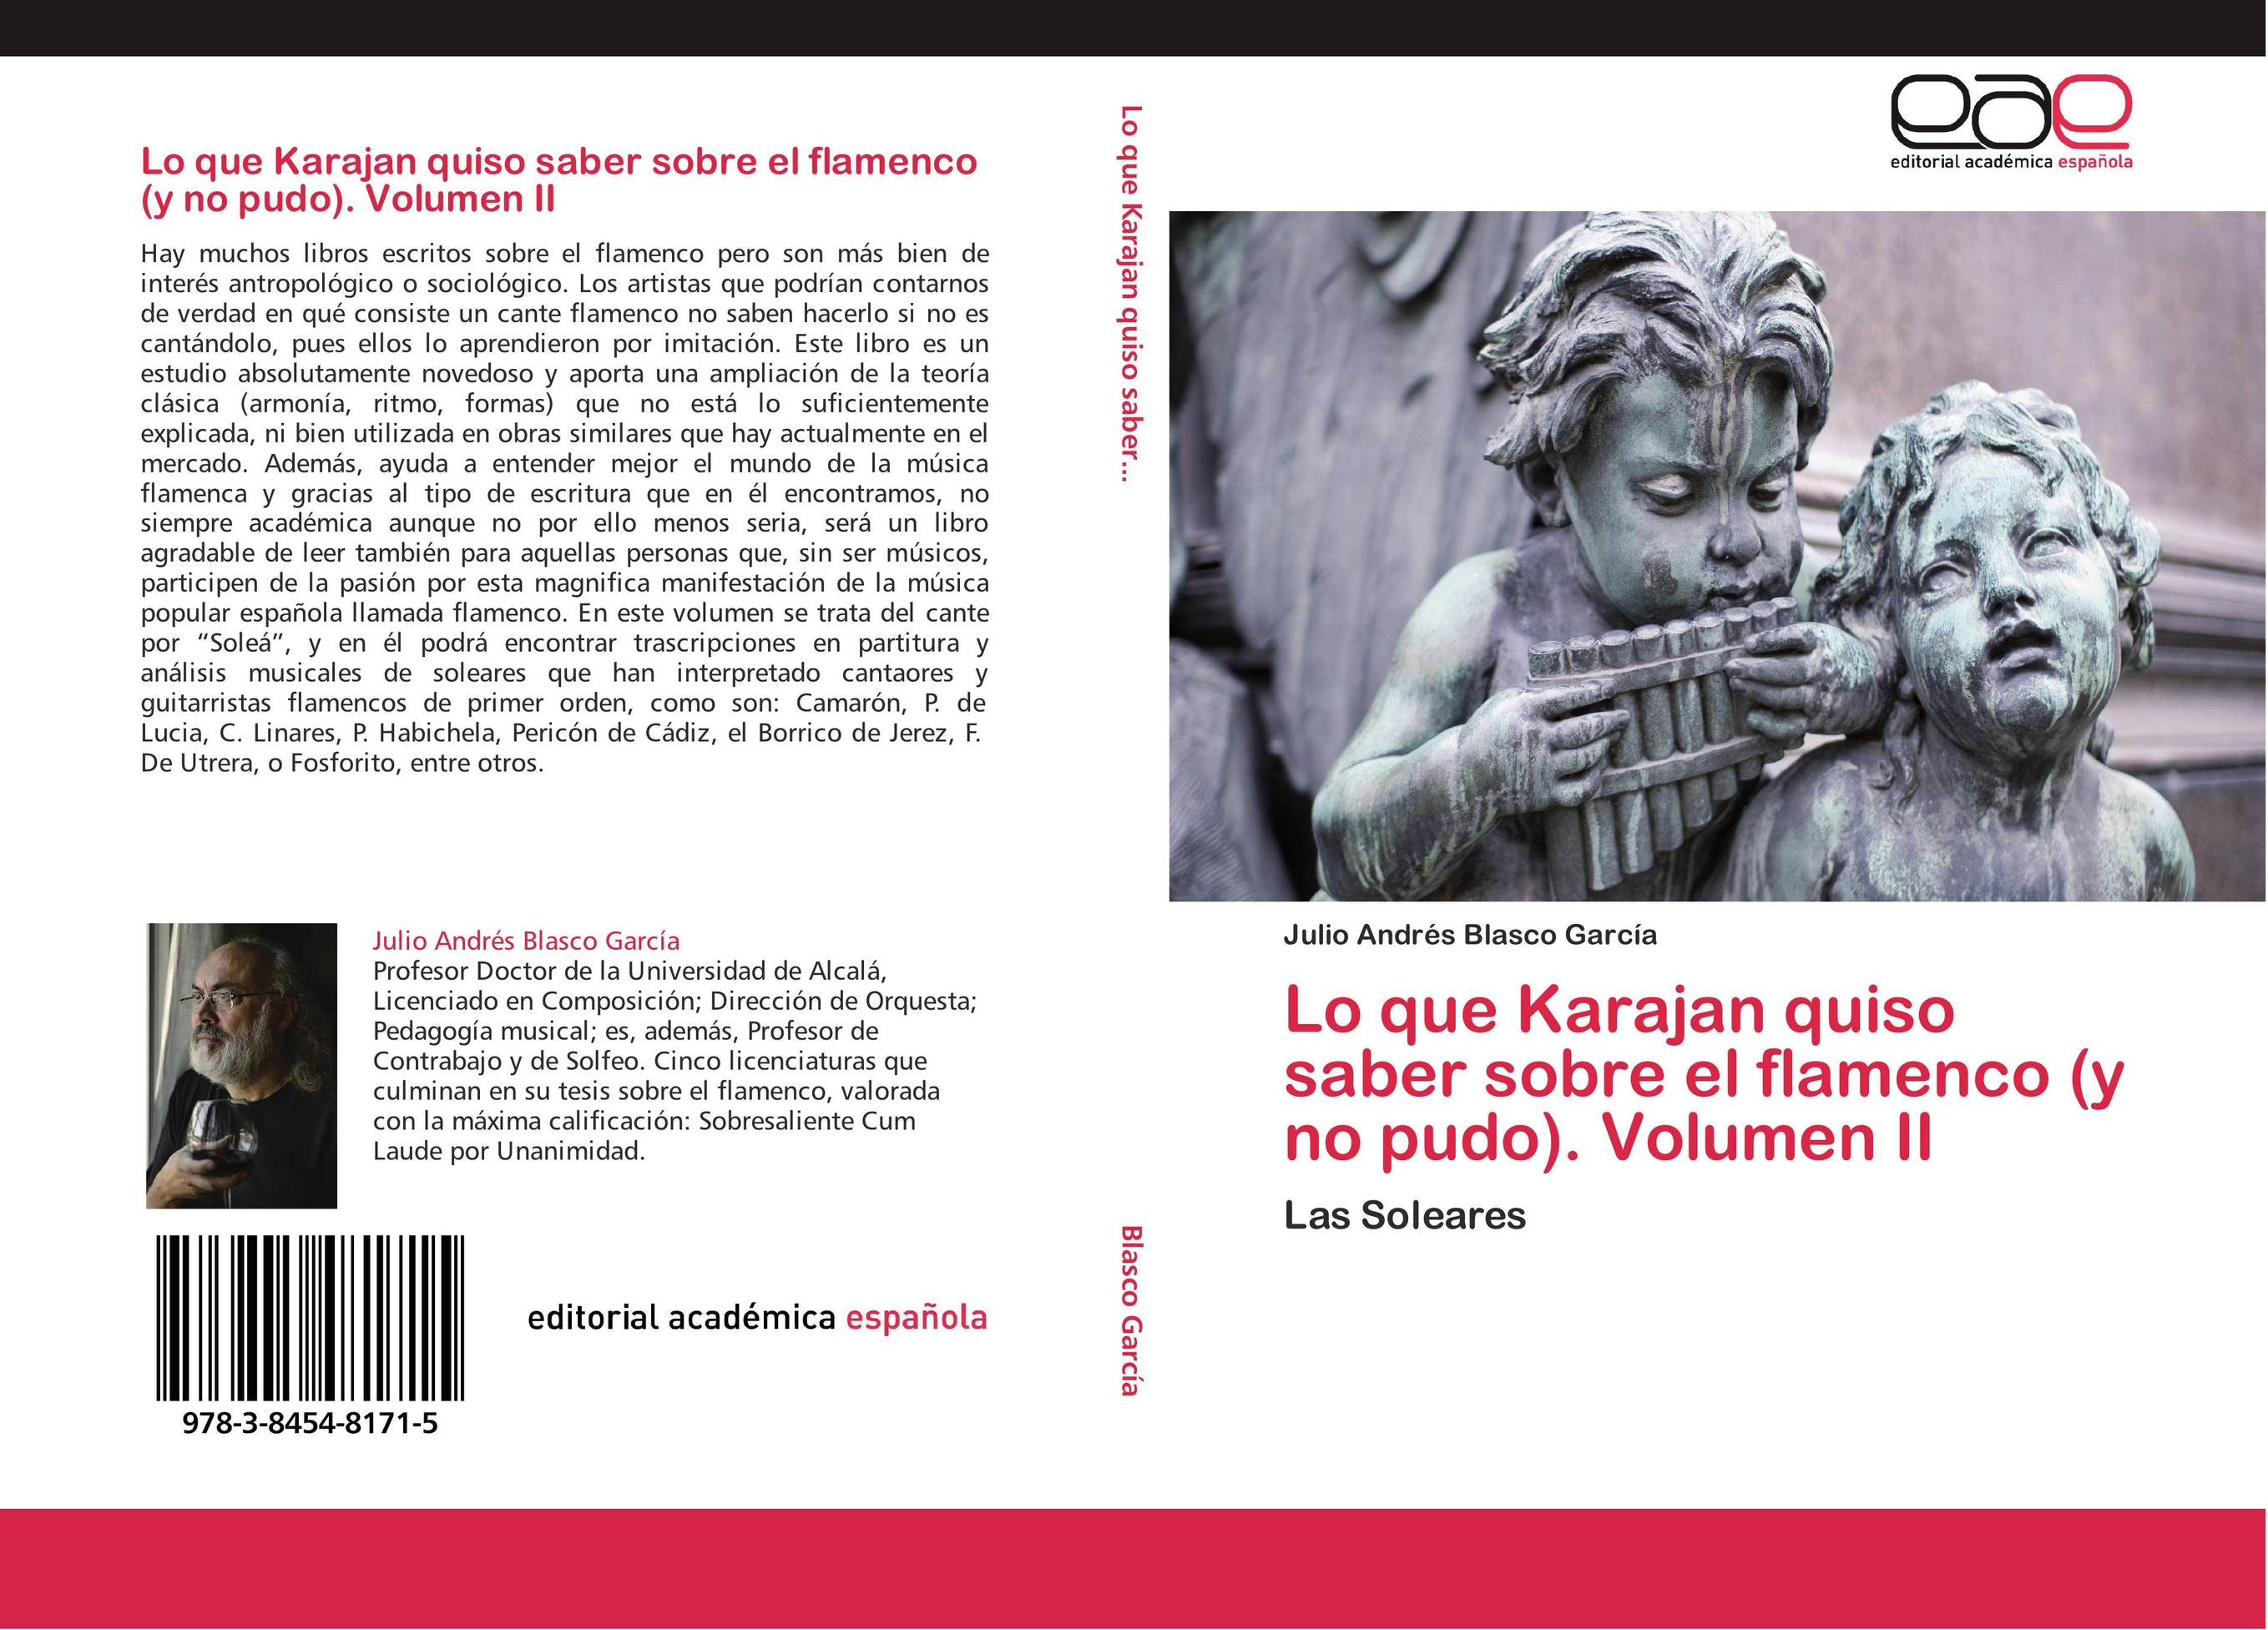 Lo que Karajan quiso saber sobre el flamenco (y no pudo). Volumen II